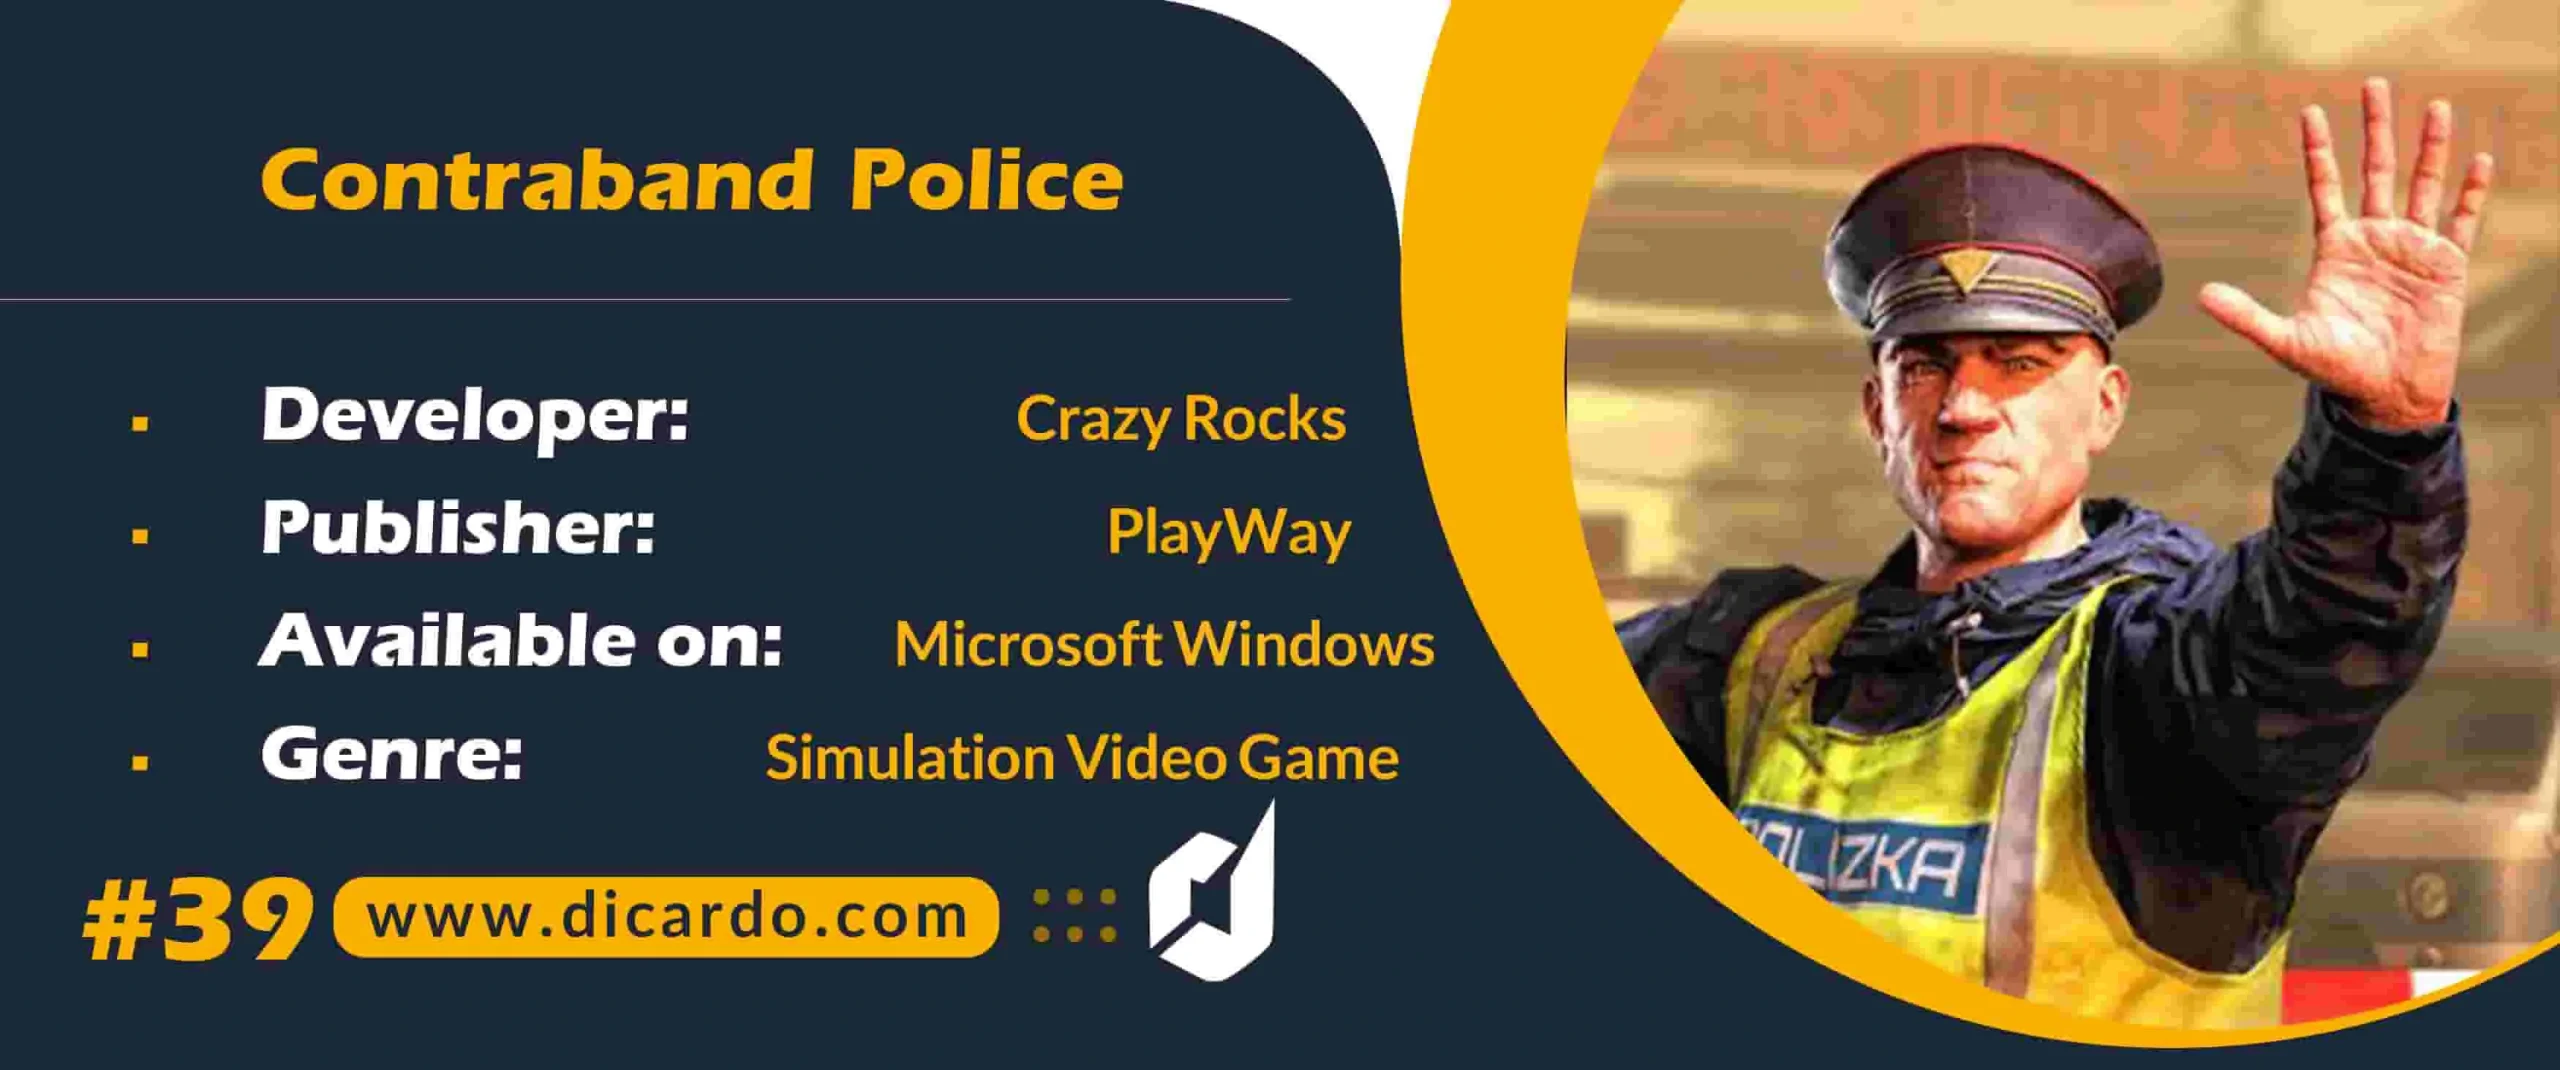 #39 کنترابند پلیس Contraband Police از بازیهای کامپیوتری در نقش بازرس پلیس مرزی